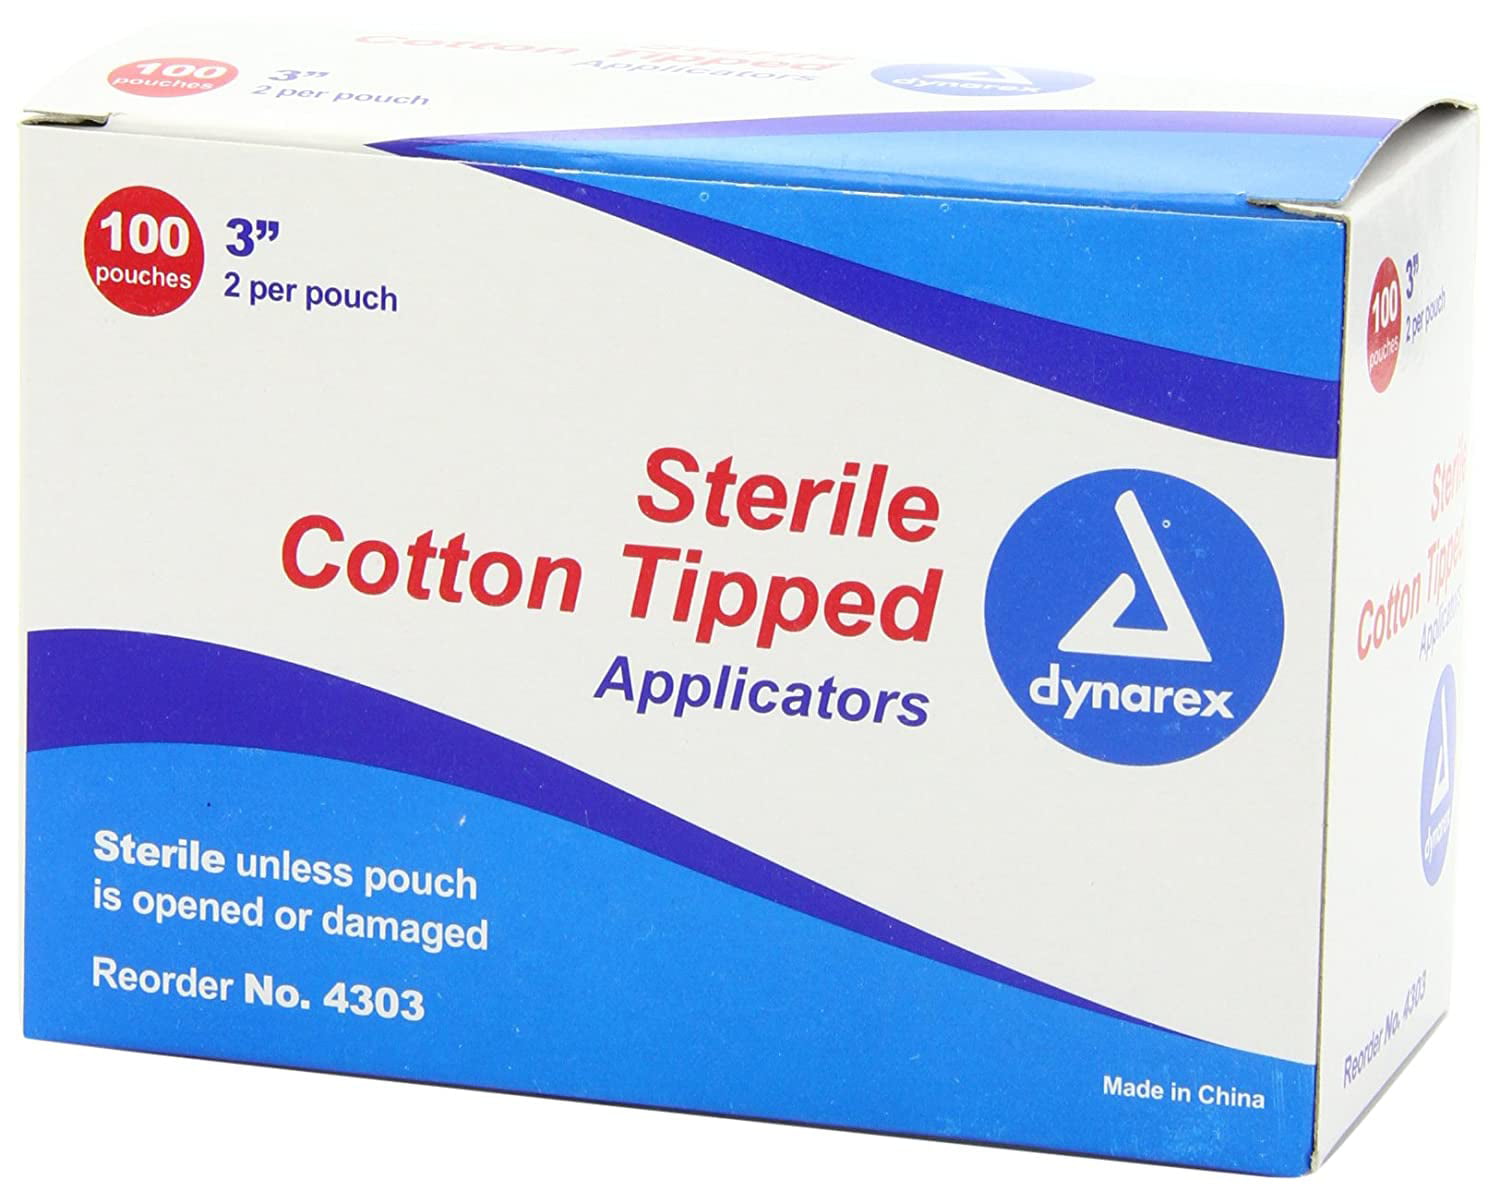 Dynarex Cotton Roll Non-Sterile 12x56 1 lb